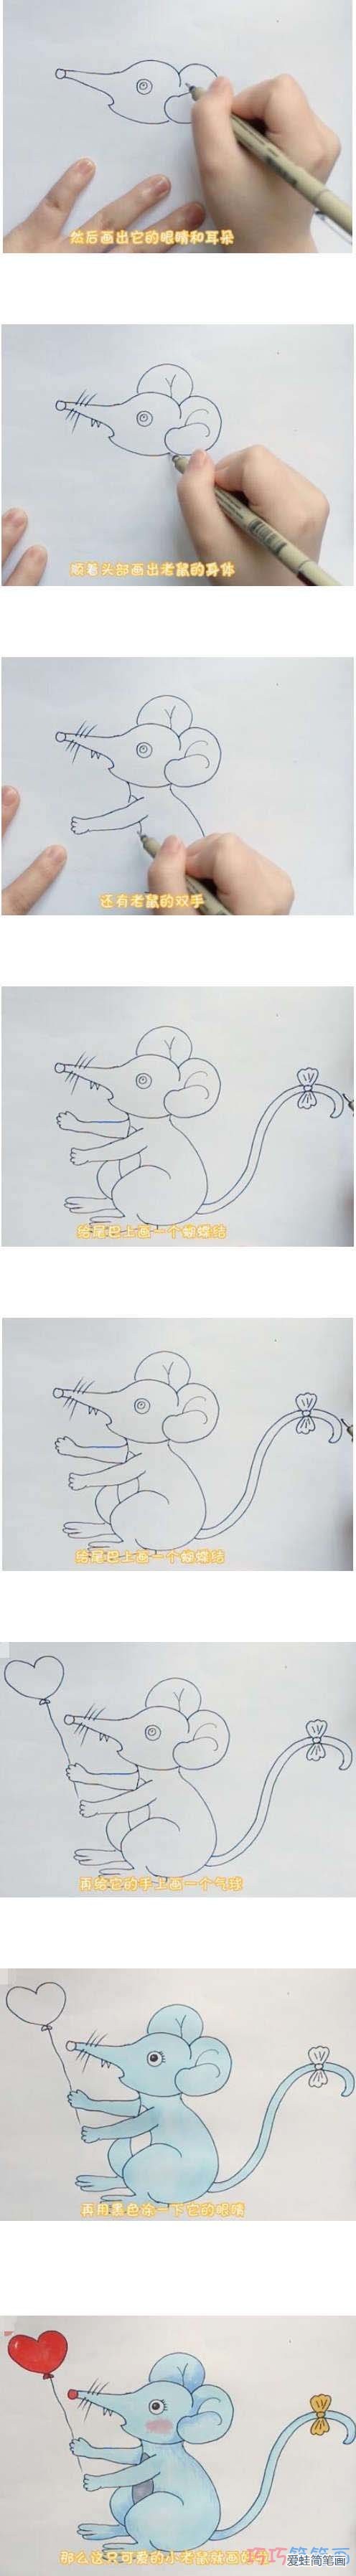 教你如何画小老鼠简笔画